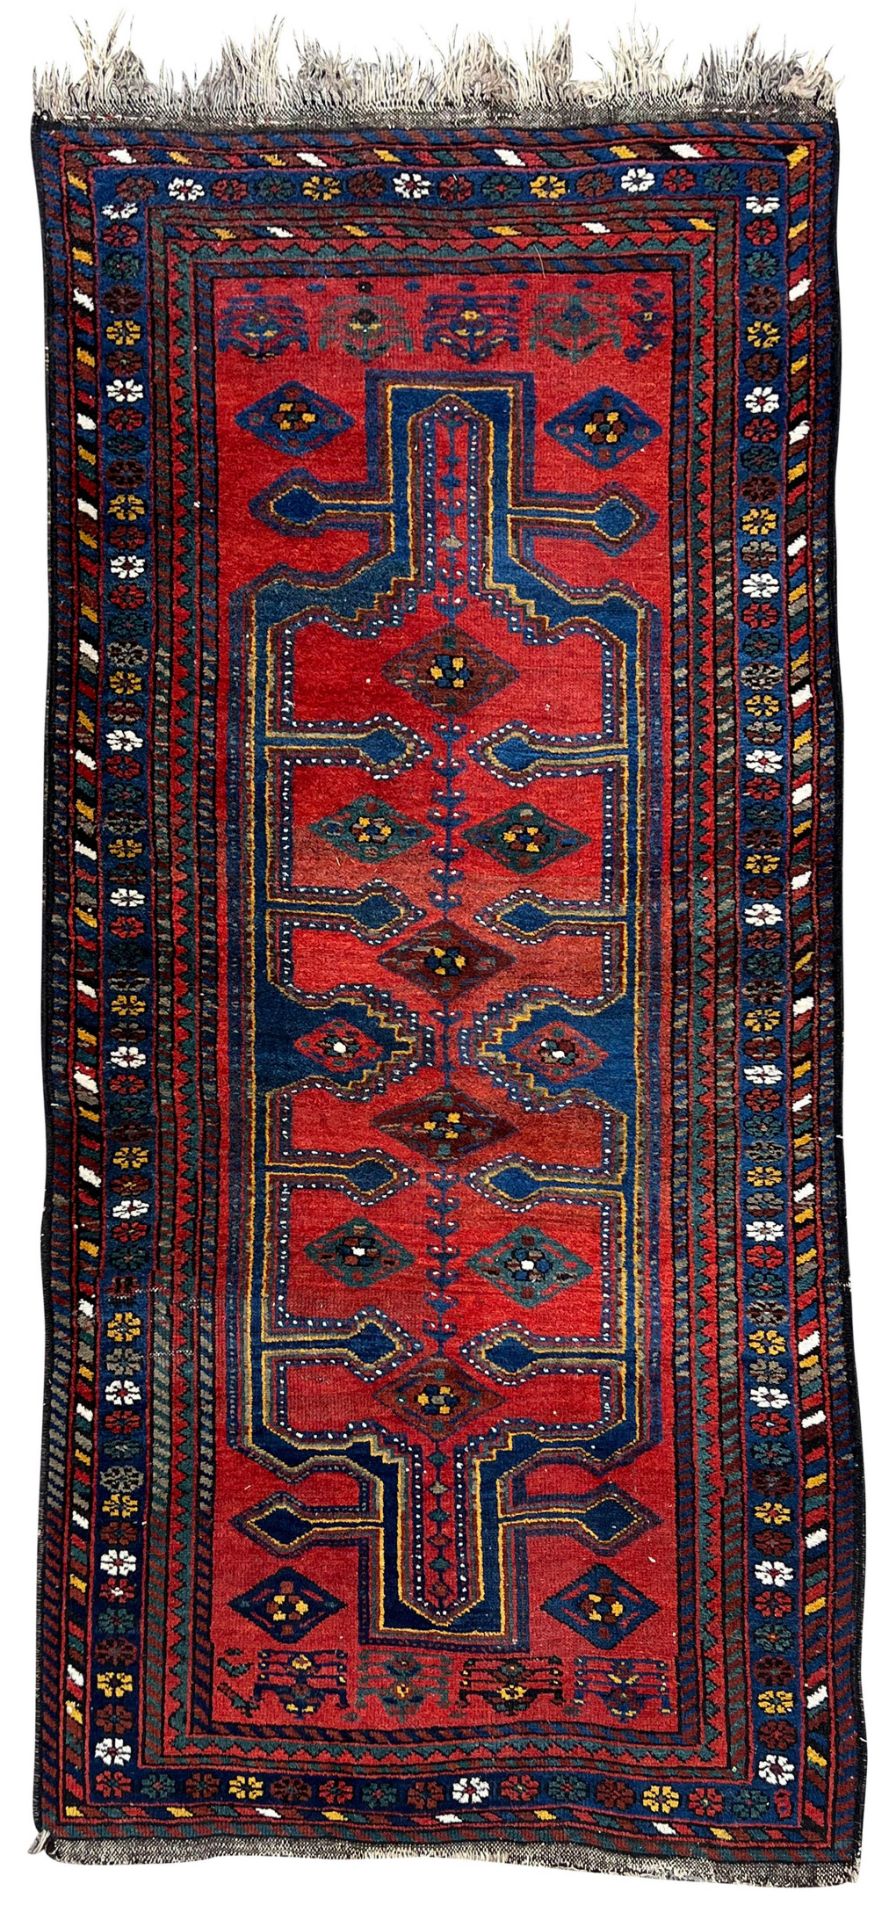 Village rug. Around 1910.